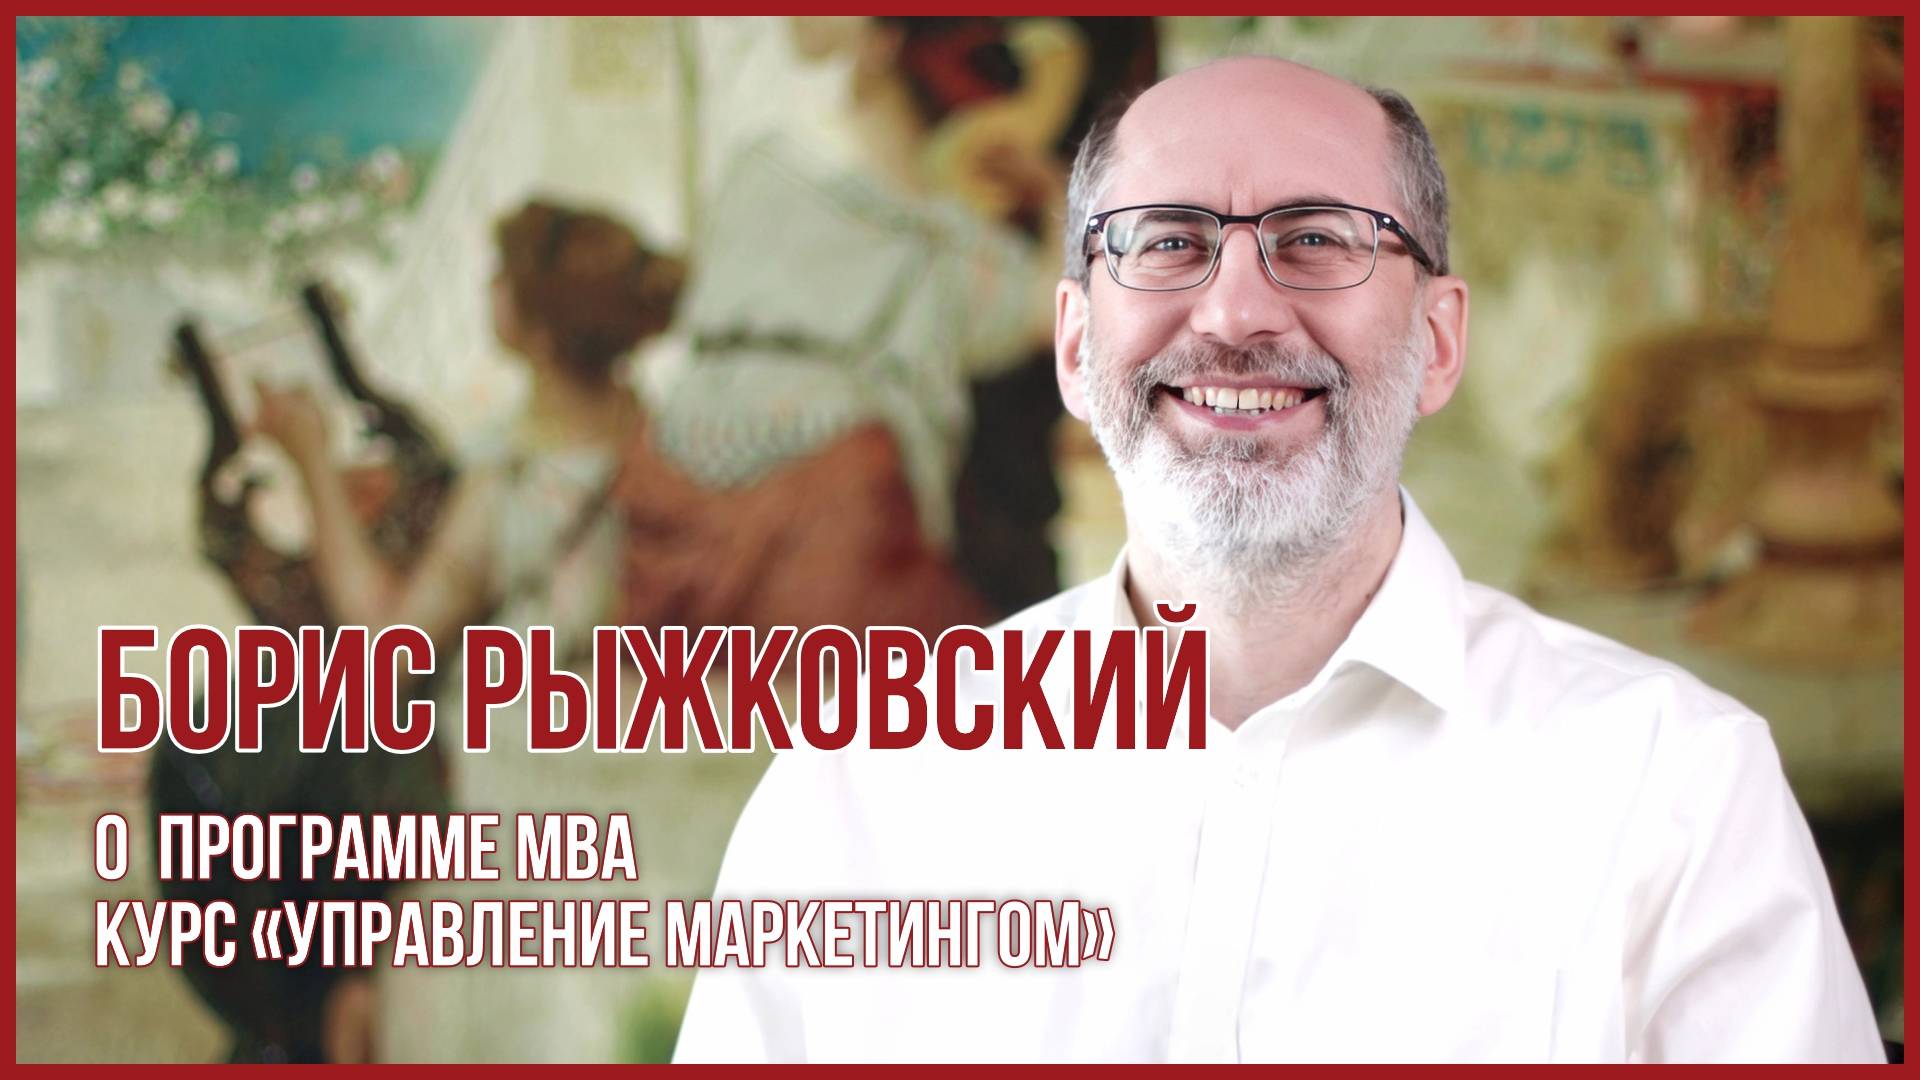 Борис Рыжковский, бизнес-тренер курса «Управление маркетингом»